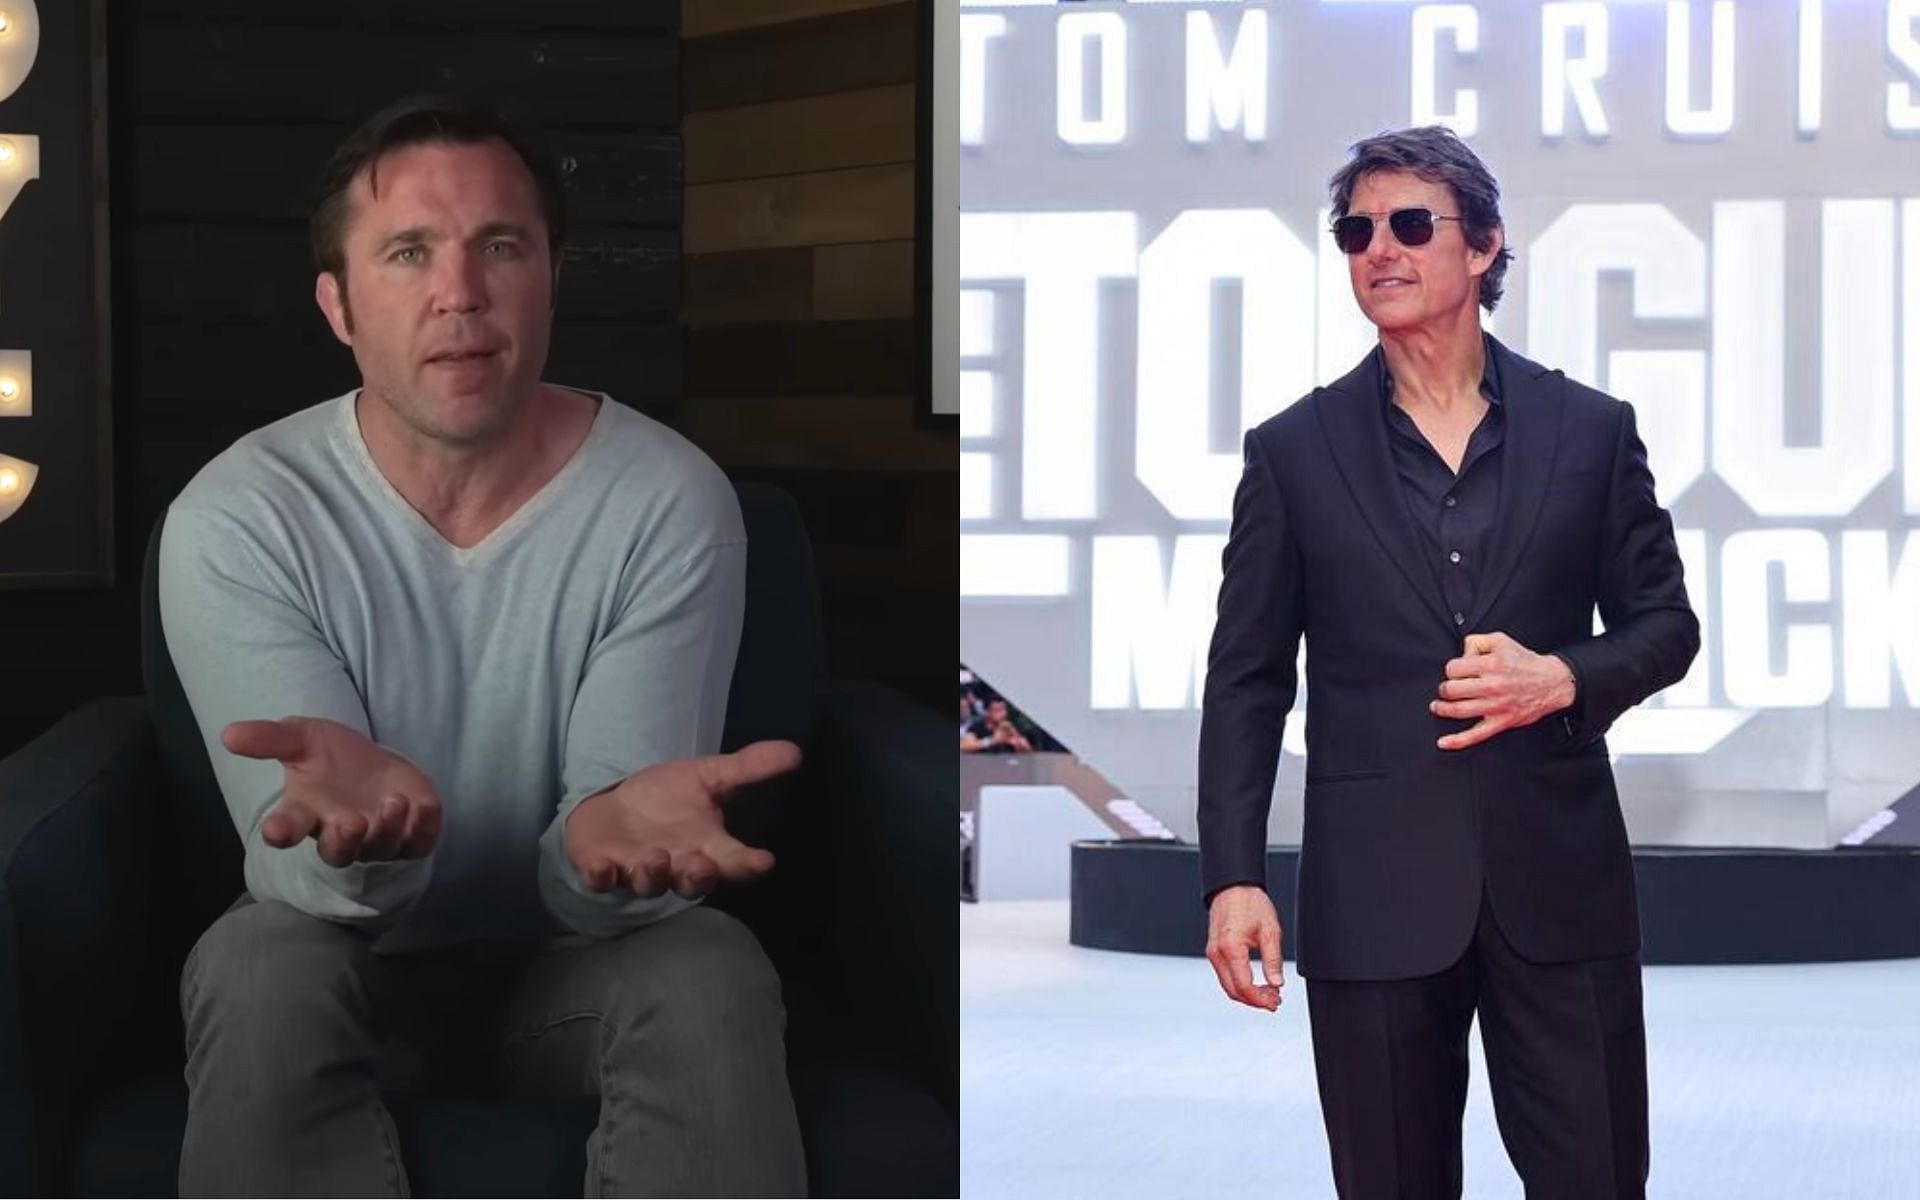 Chael Sonnen (left), Tom Cruise (right) {Images courtesy: Chael Sonnen via YouTube, @topgunmovie via Instagram]